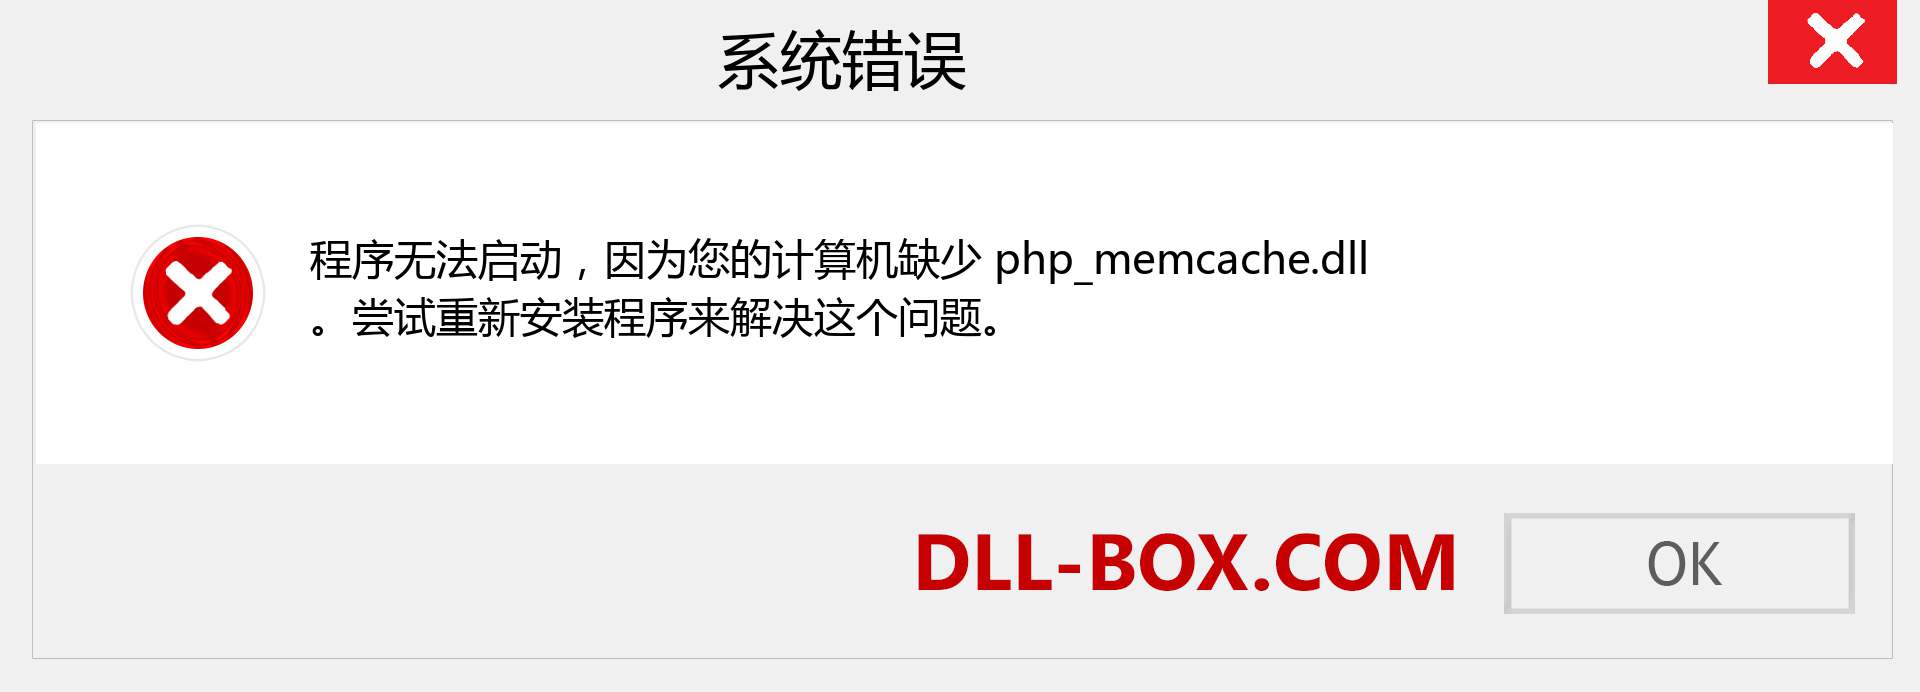 php_memcache.dll 文件丢失？。 适用于 Windows 7、8、10 的下载 - 修复 Windows、照片、图像上的 php_memcache dll 丢失错误